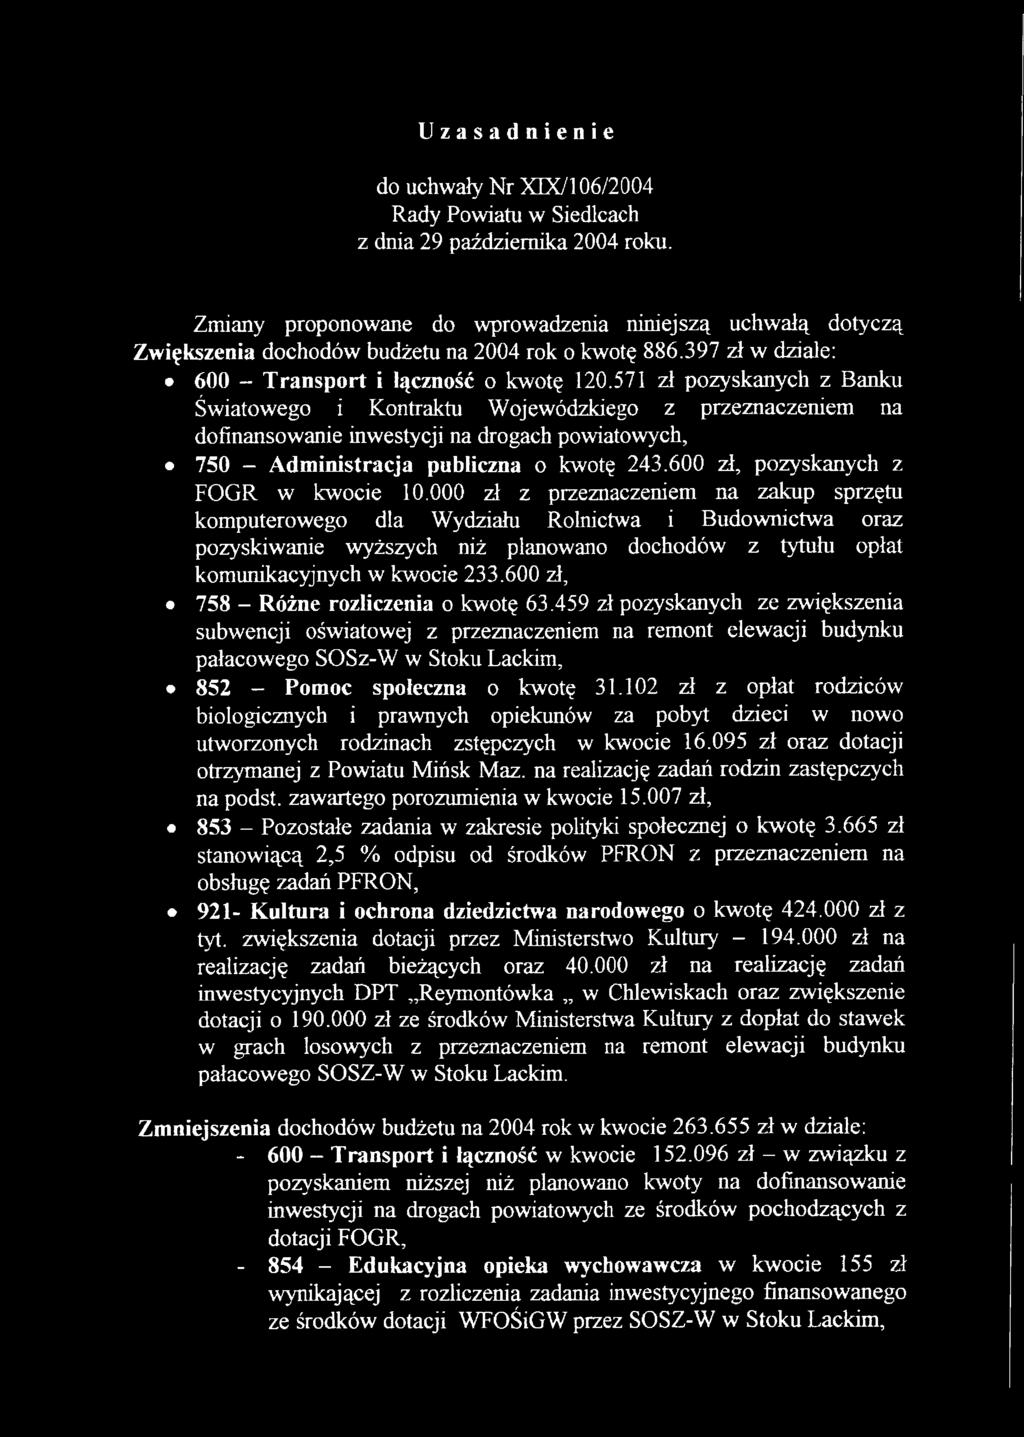 571 zł pozyskanych z Banku Światowego i Kontraktu Wojewódzkiego z przeznaczeniem na dofinansowanie inwestycji na drogach powiatowych, 750 - Administracja publiczna o kwotę 243.